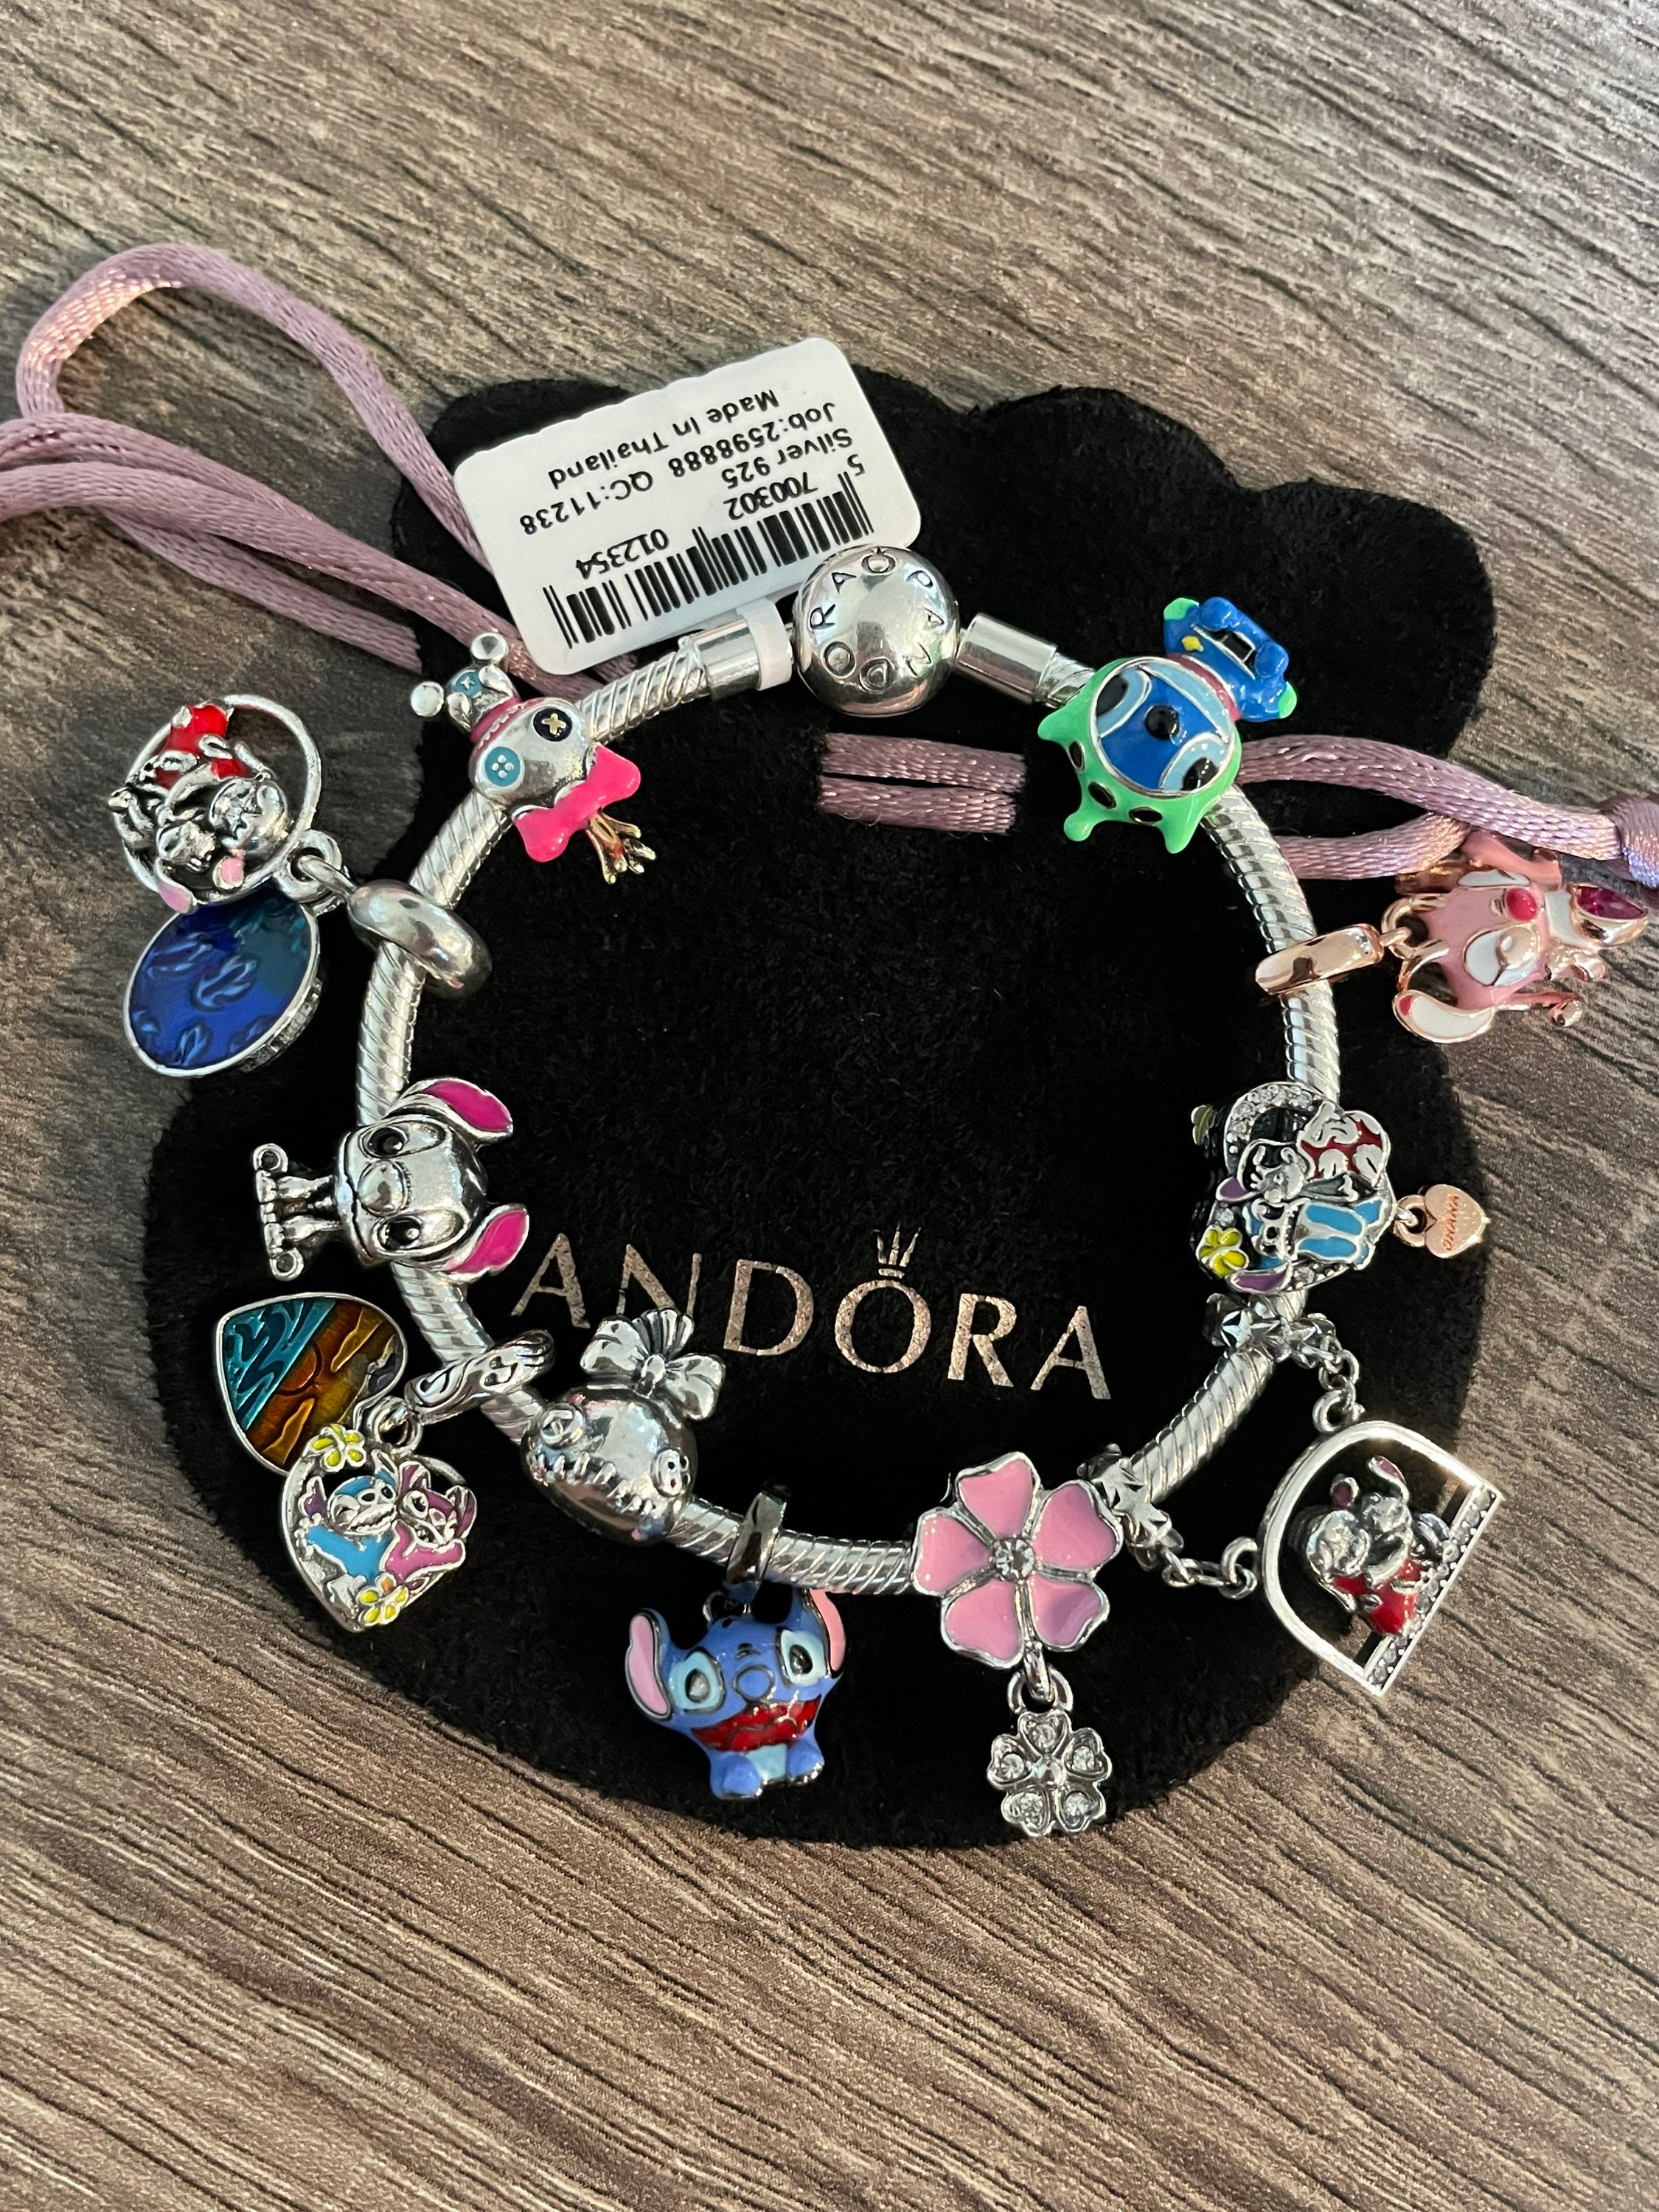 Disney Pandora Jewelry Charm - Stitch and Angel - Ohana